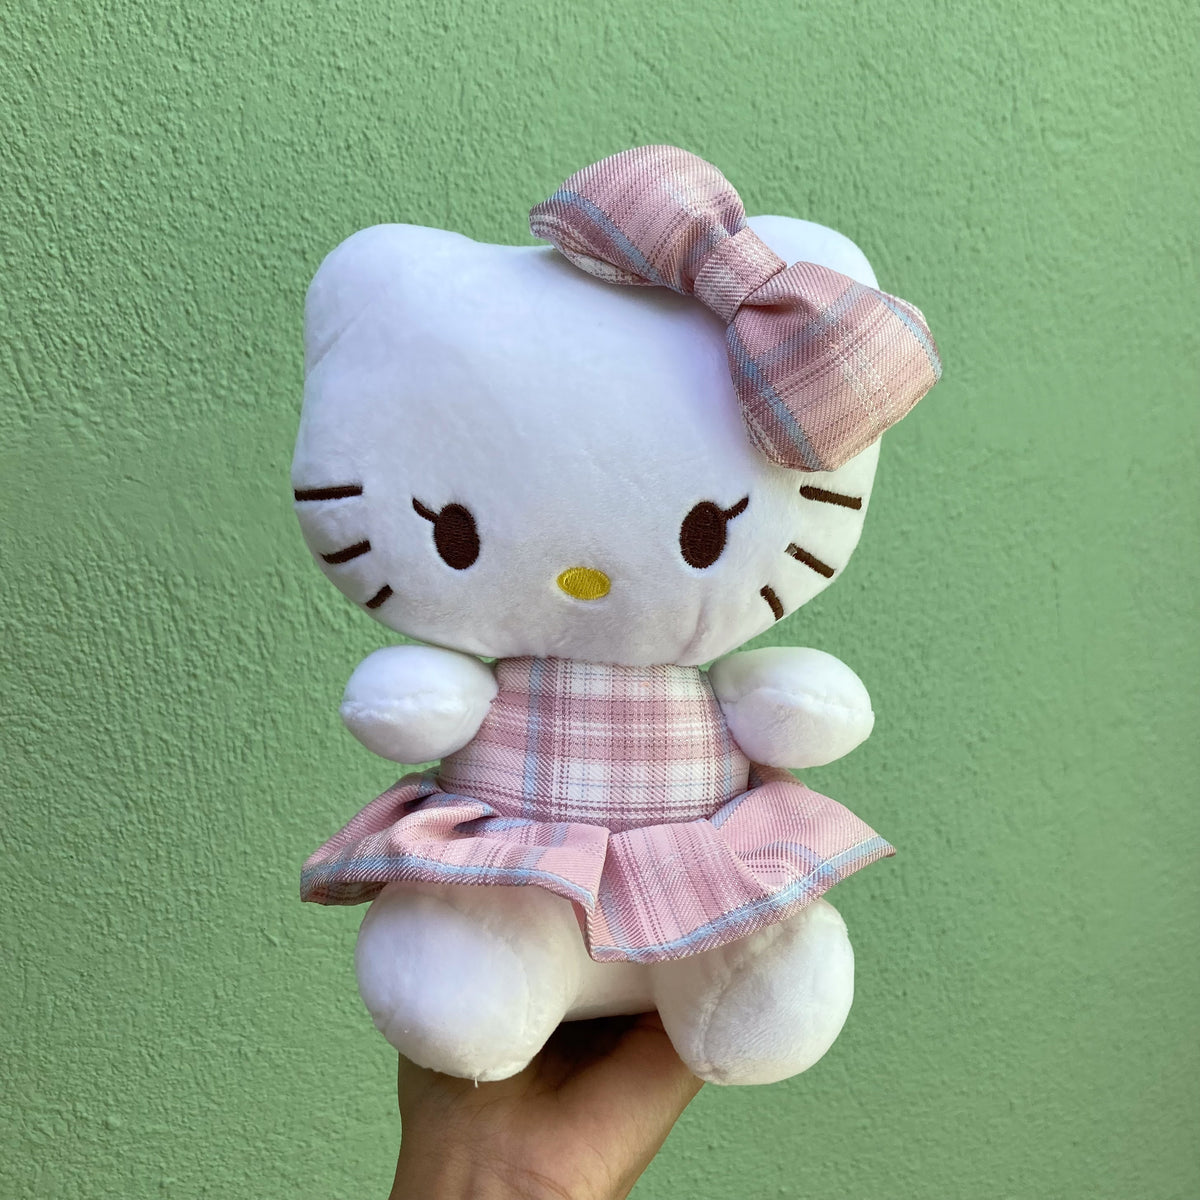 Nuevo Peluche Hello Kitty de 39 cm